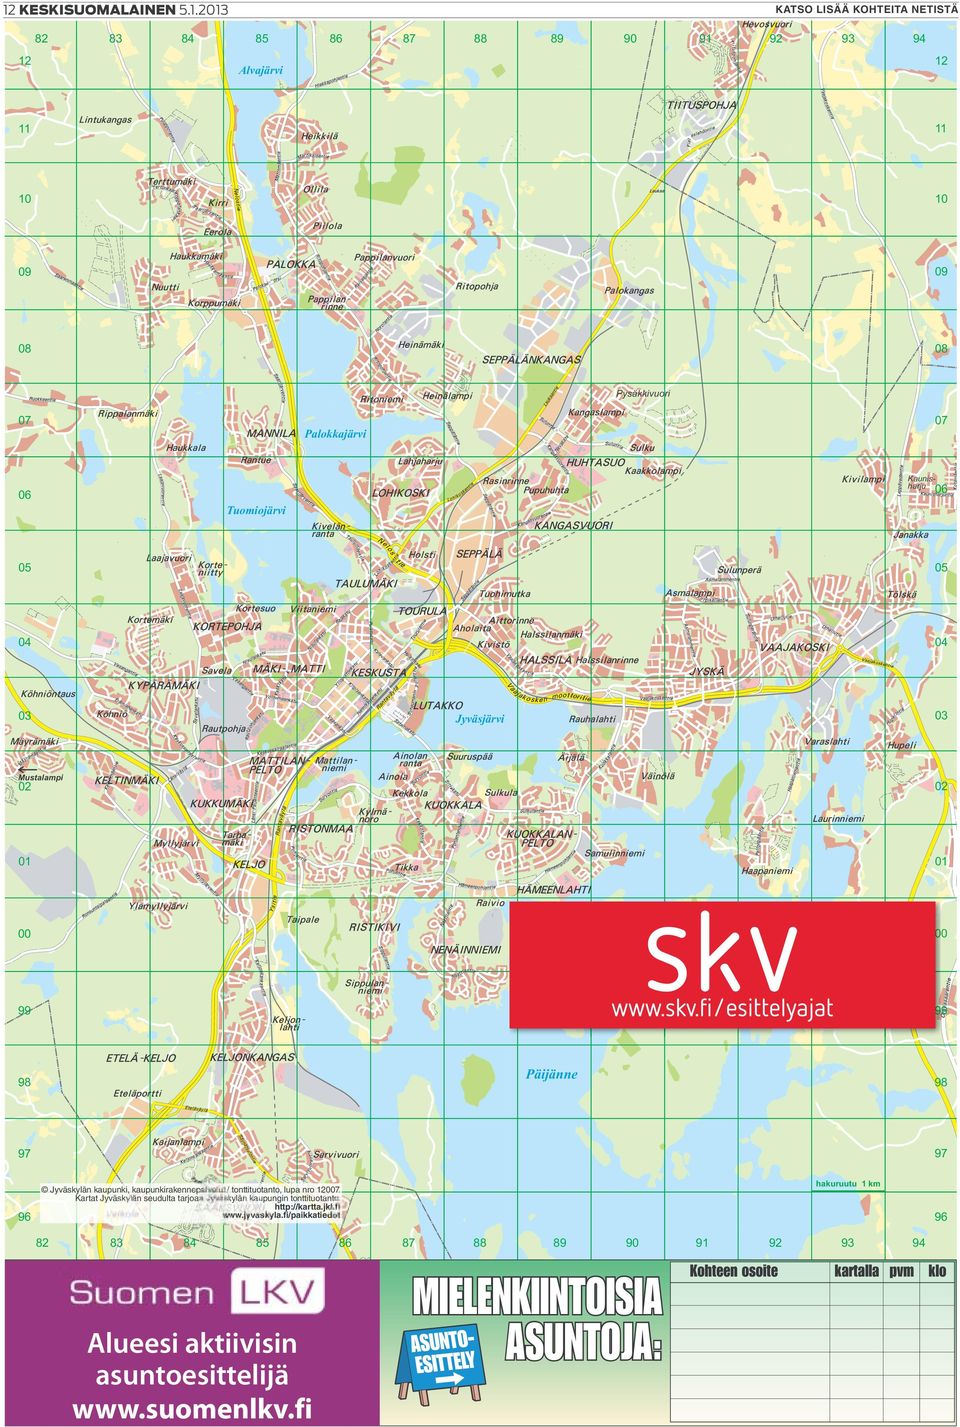 kaupunki, kaupunkirakennepalvelut / tonttituotanto, lupa nro 12007. Kartat Jyväskylän seudulta tarjoaa Jyväskylän kaupungin tonttituotanto. http://kartta.jkl.fi www.